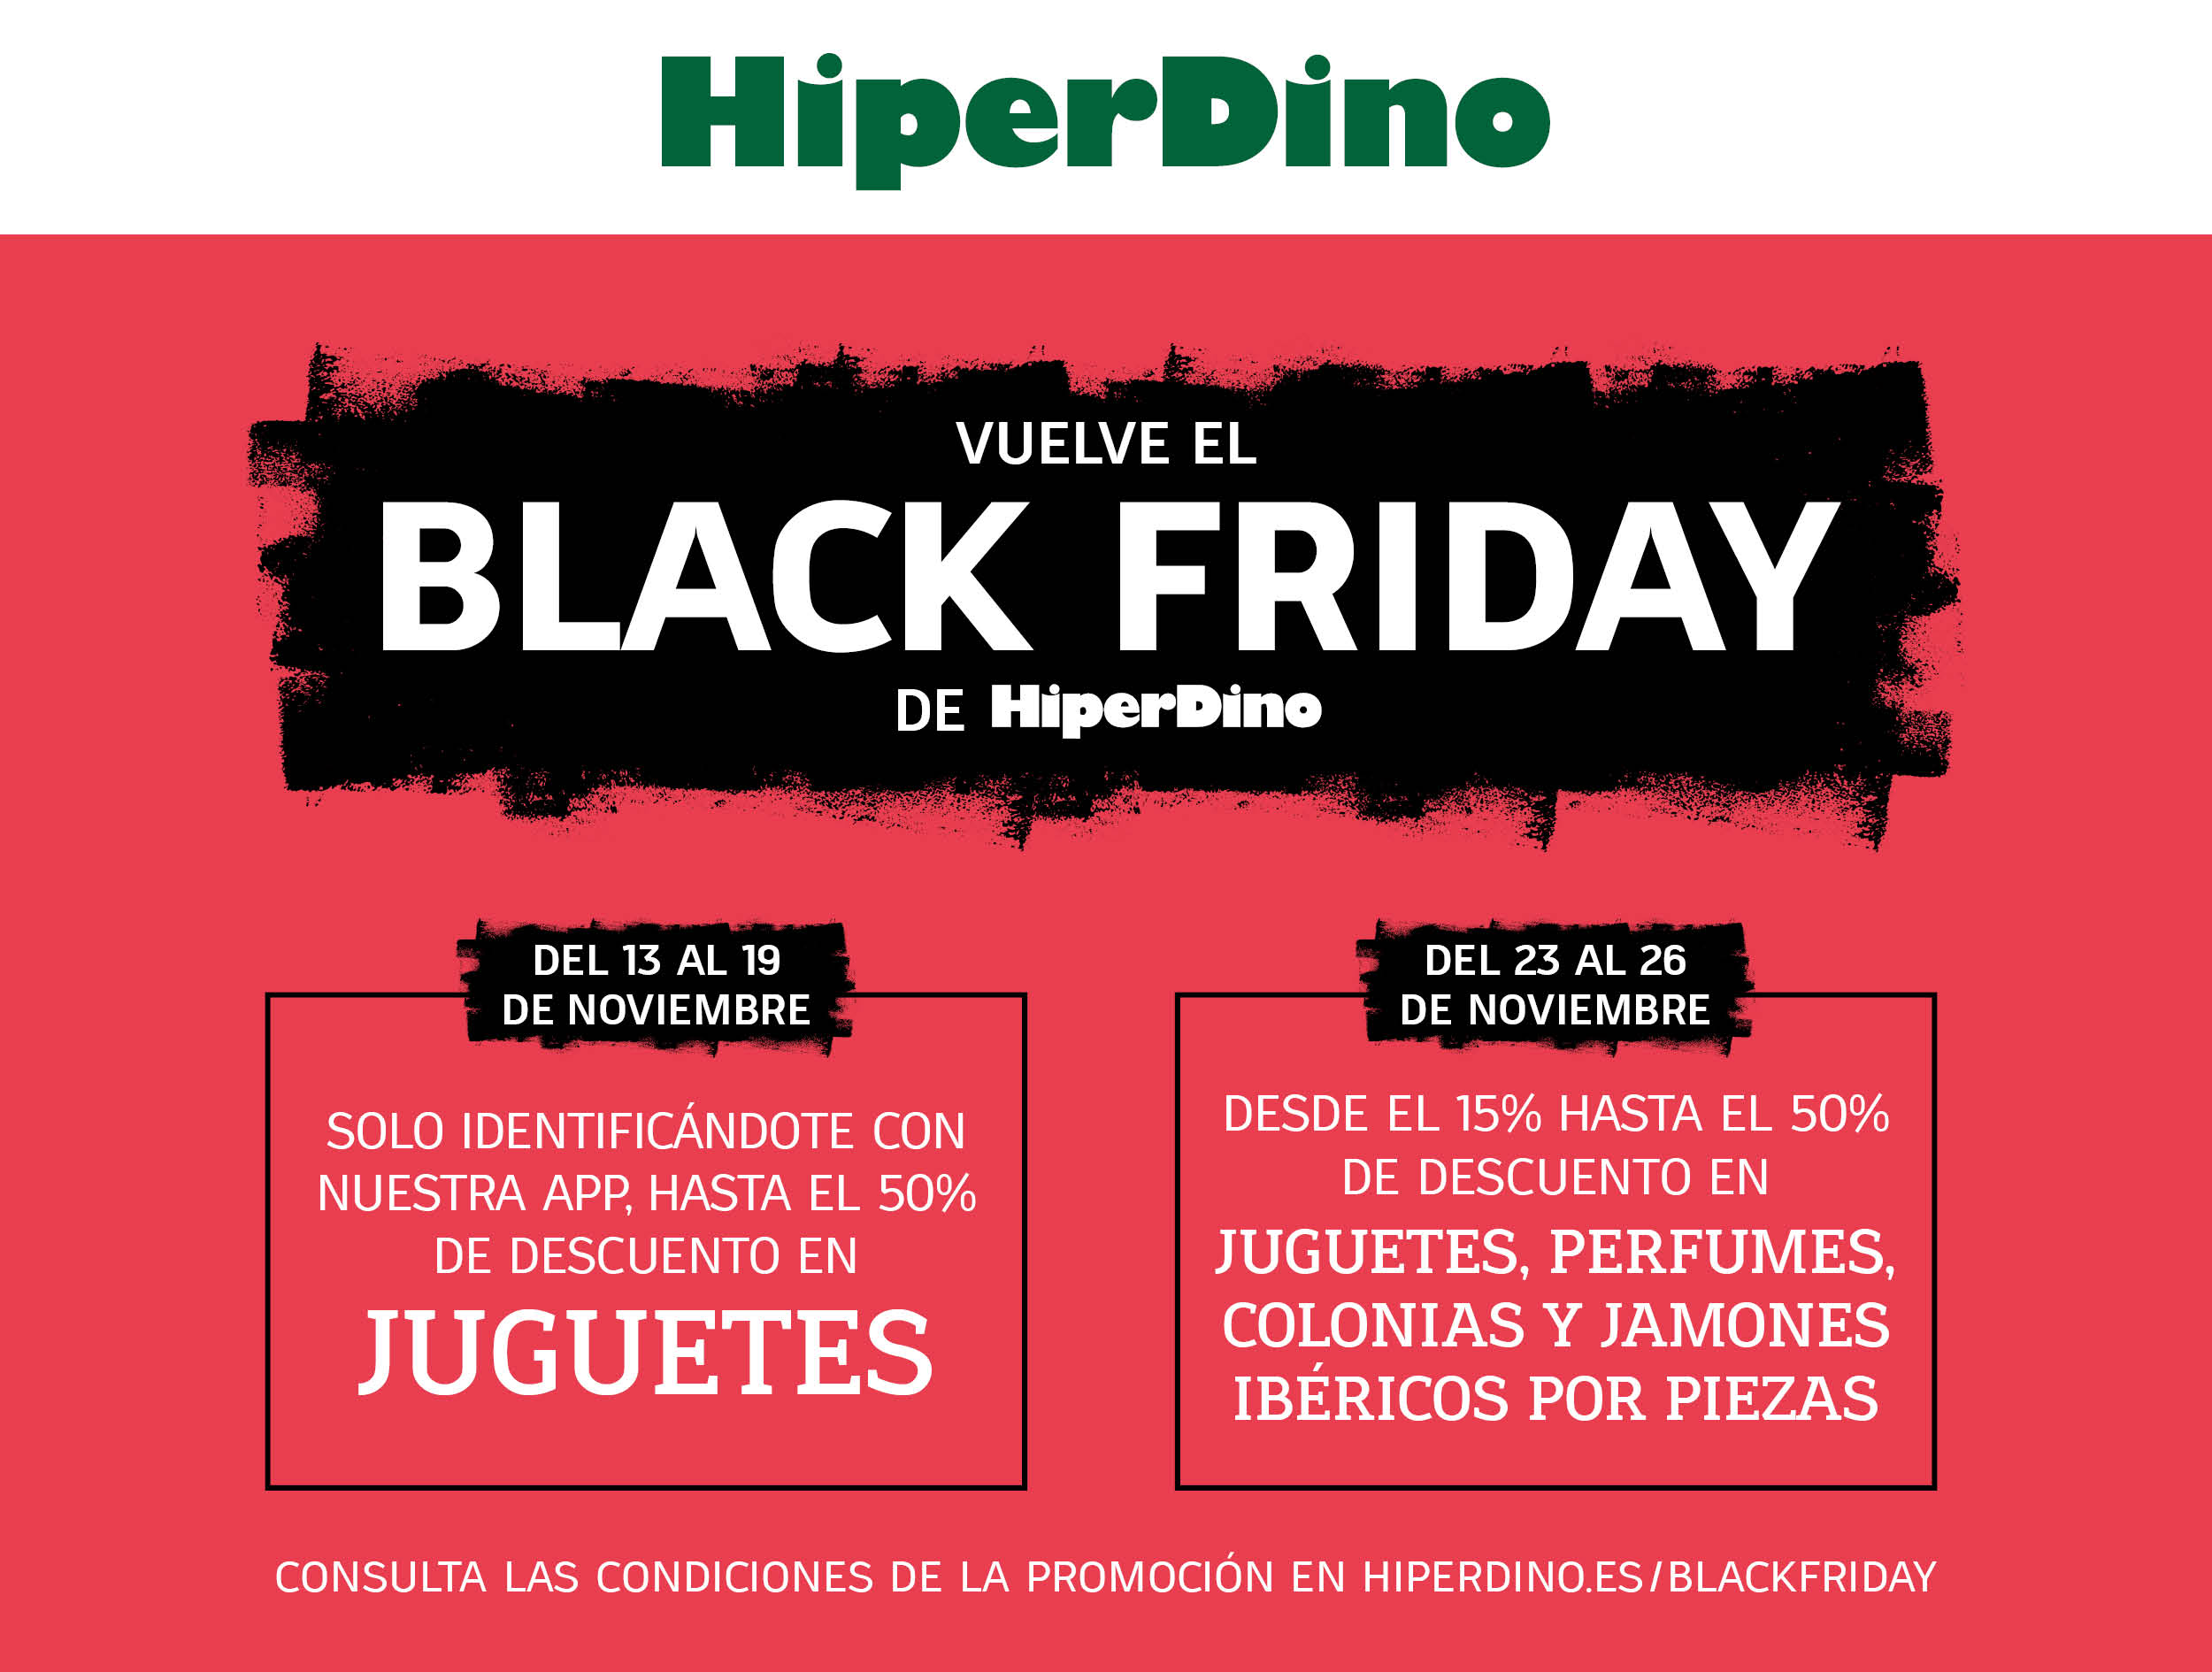 Black Friday en HiperDino 